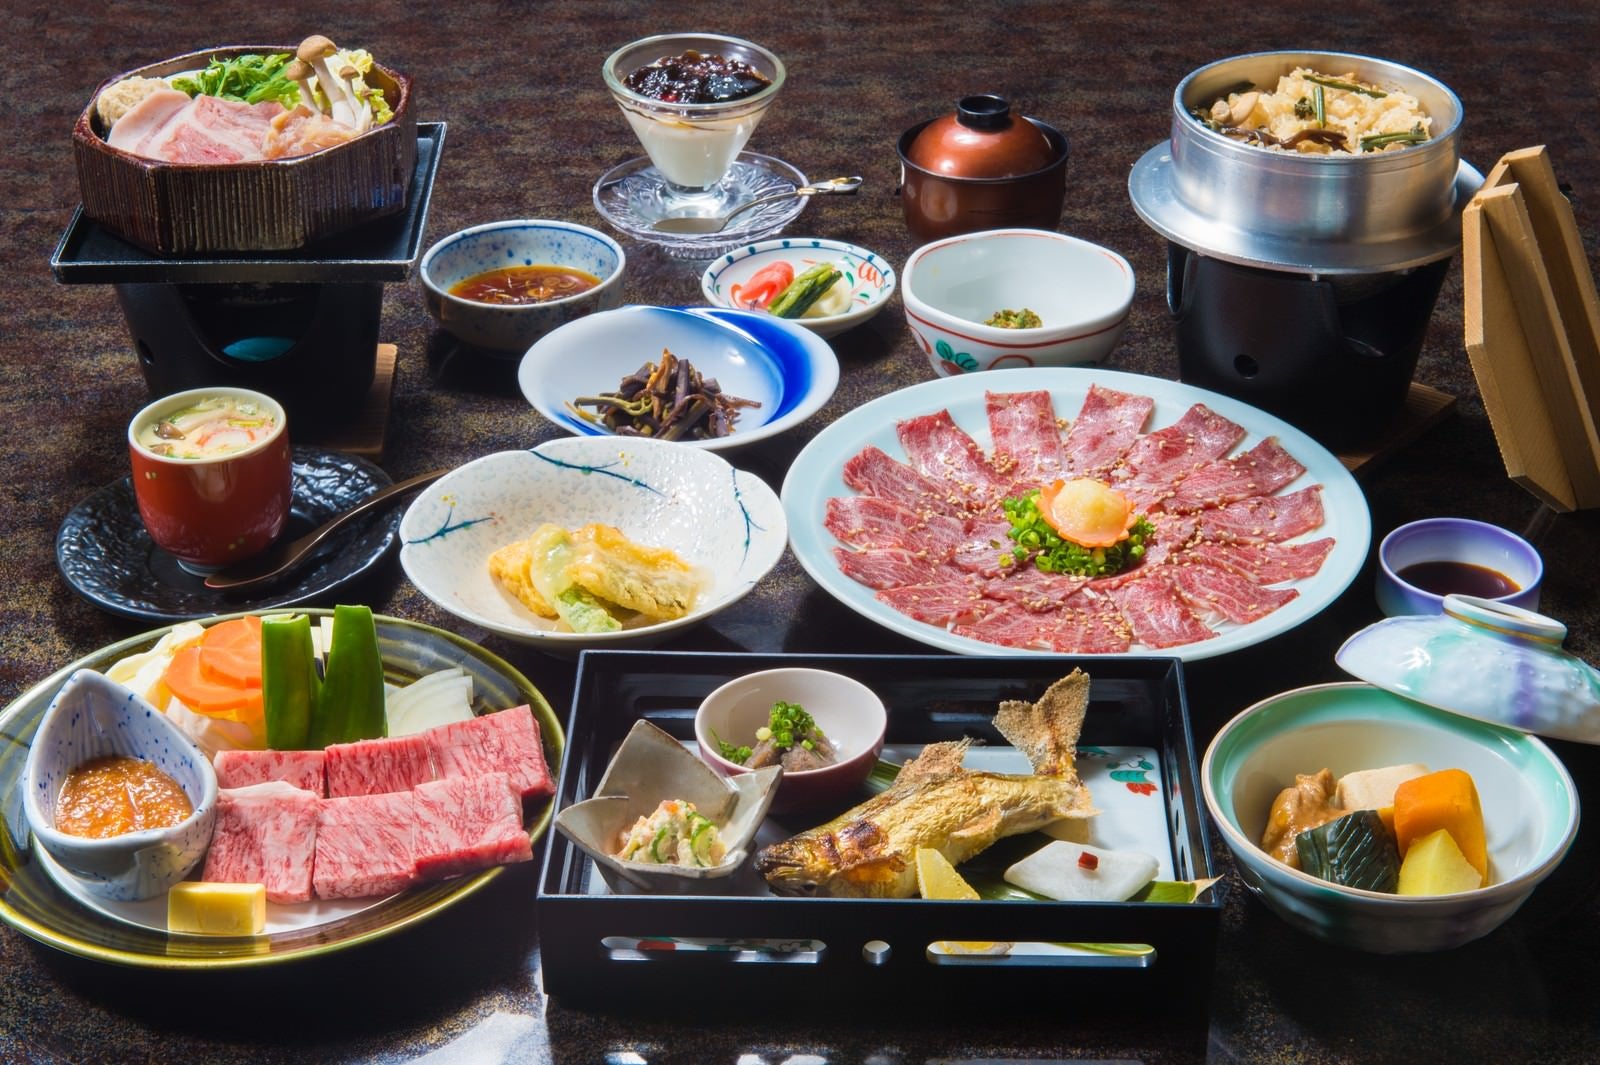 「奥飛騨エリアで最高評価の料理宿「栄太郎」の飛騨牛サーロインがついてくる夕食」の写真